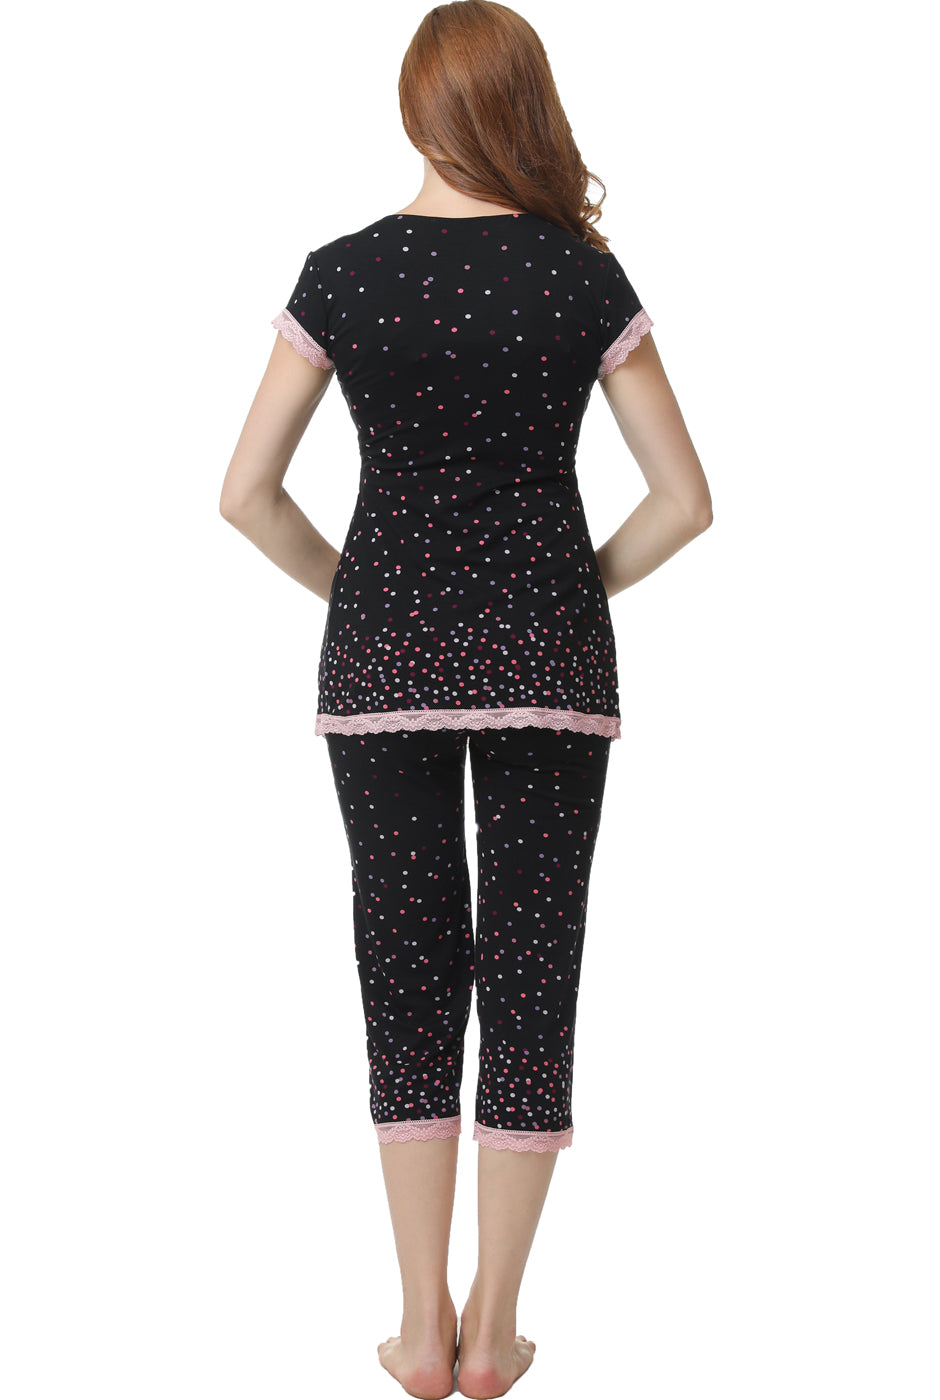 Kimi + Kai Maternity "Joyce" Nursing 2-Piece Pajamas Set